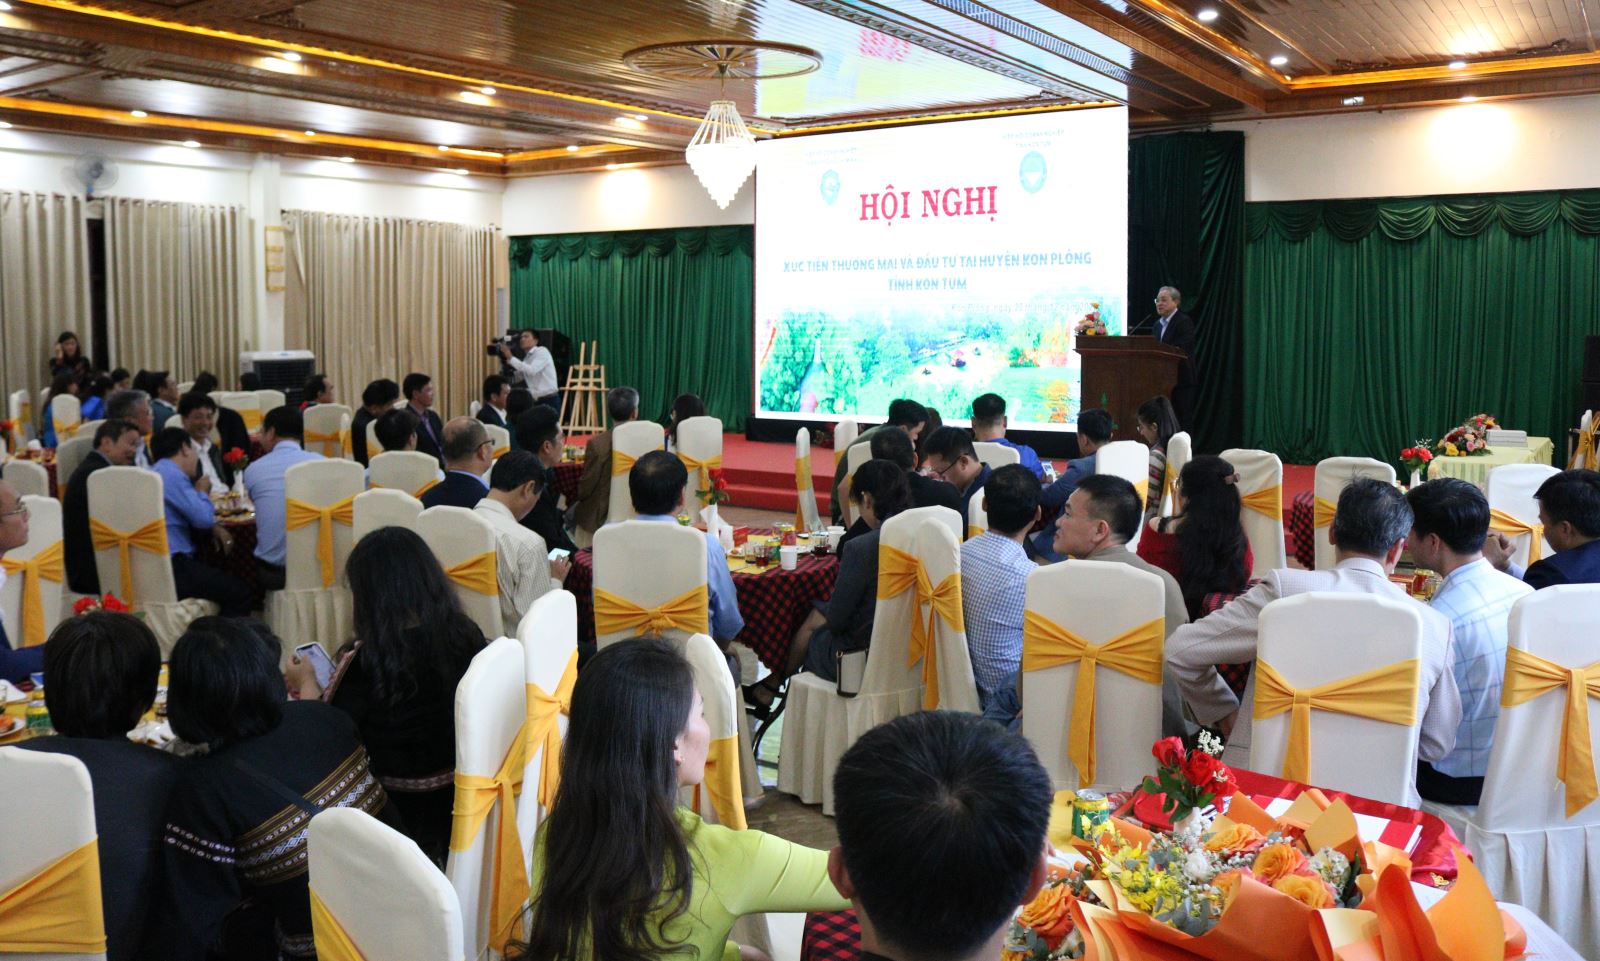 Hiệp hội doanh nghiệp Thành phố Hồ Chí Minh và Hiệp hội doanh nghiệp tỉnh Kon Tum tổ chức Hội nghị xúc tiến thương mại và đầu tư tại tỉnh Kon Tum